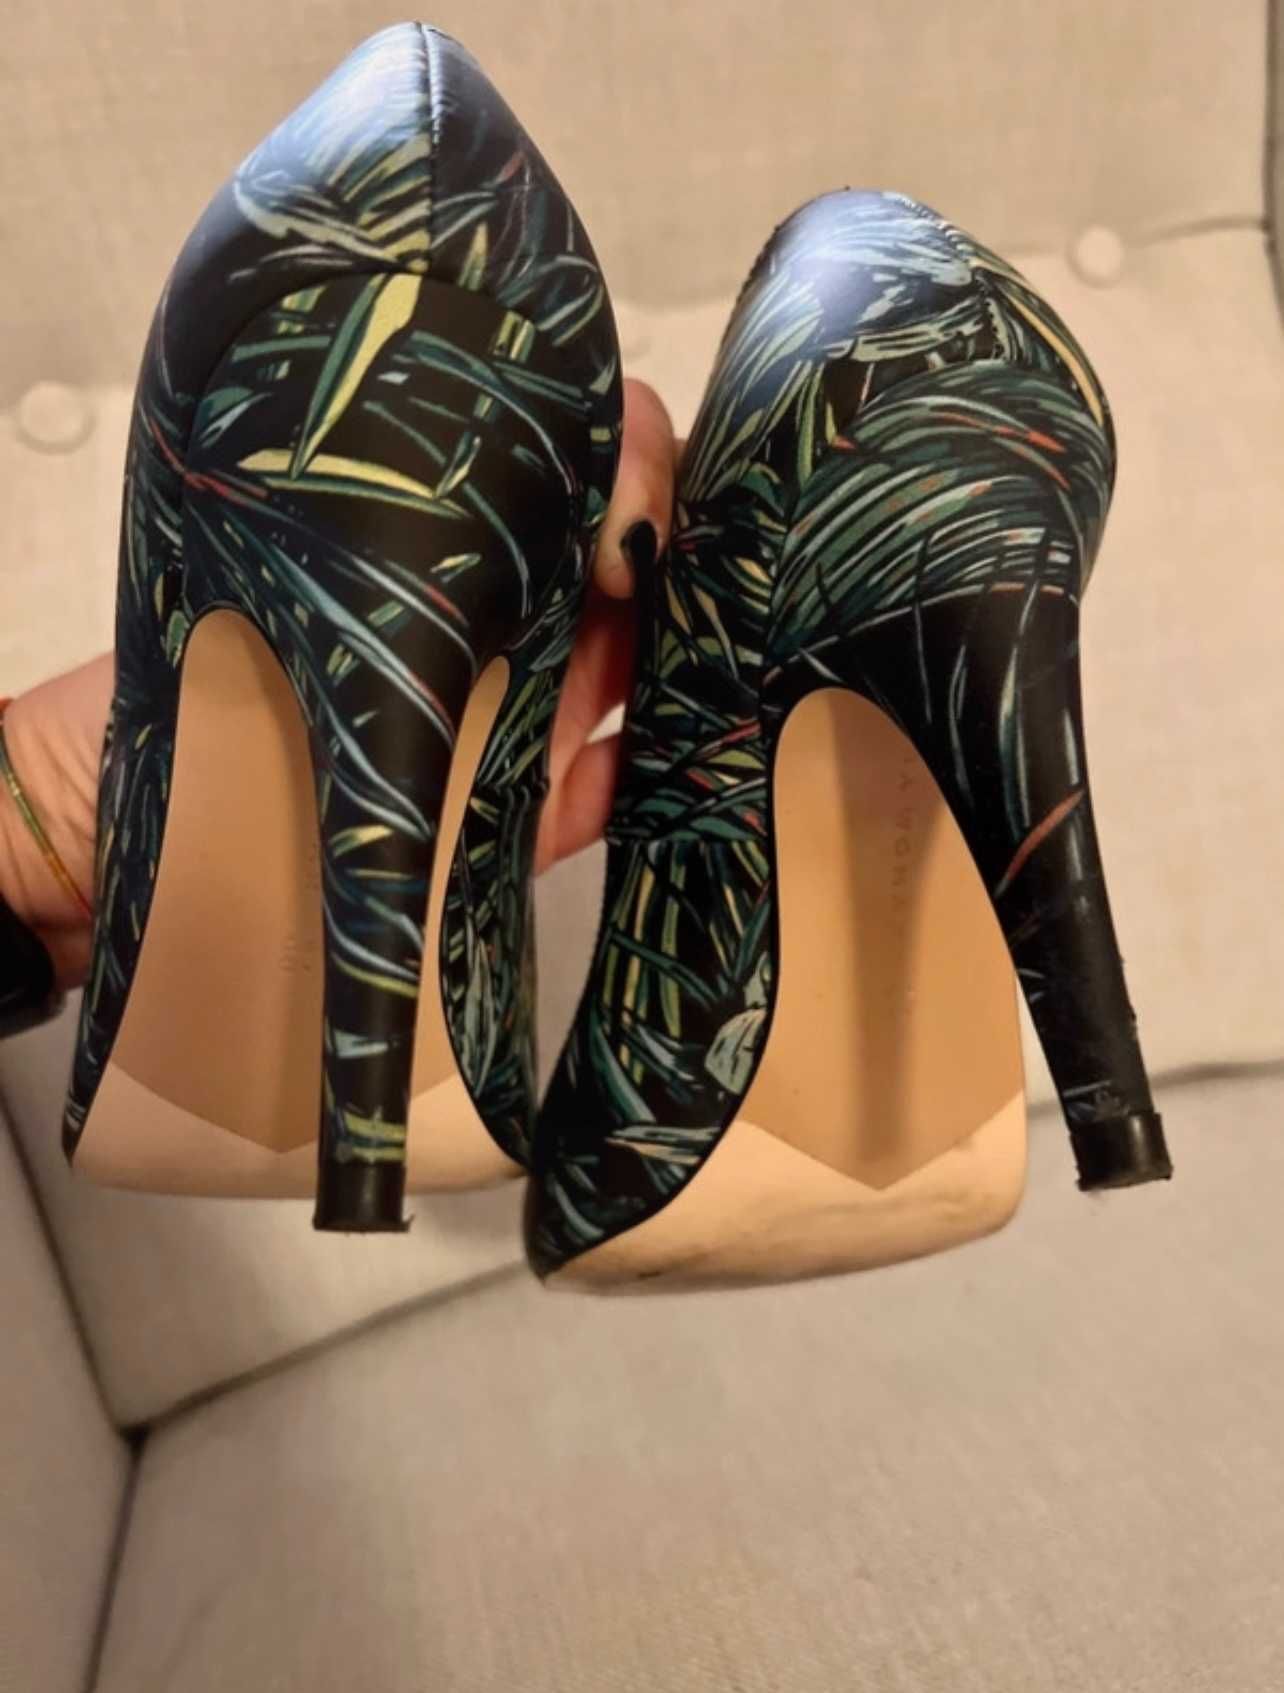 Sapatos Stilettos - Zara